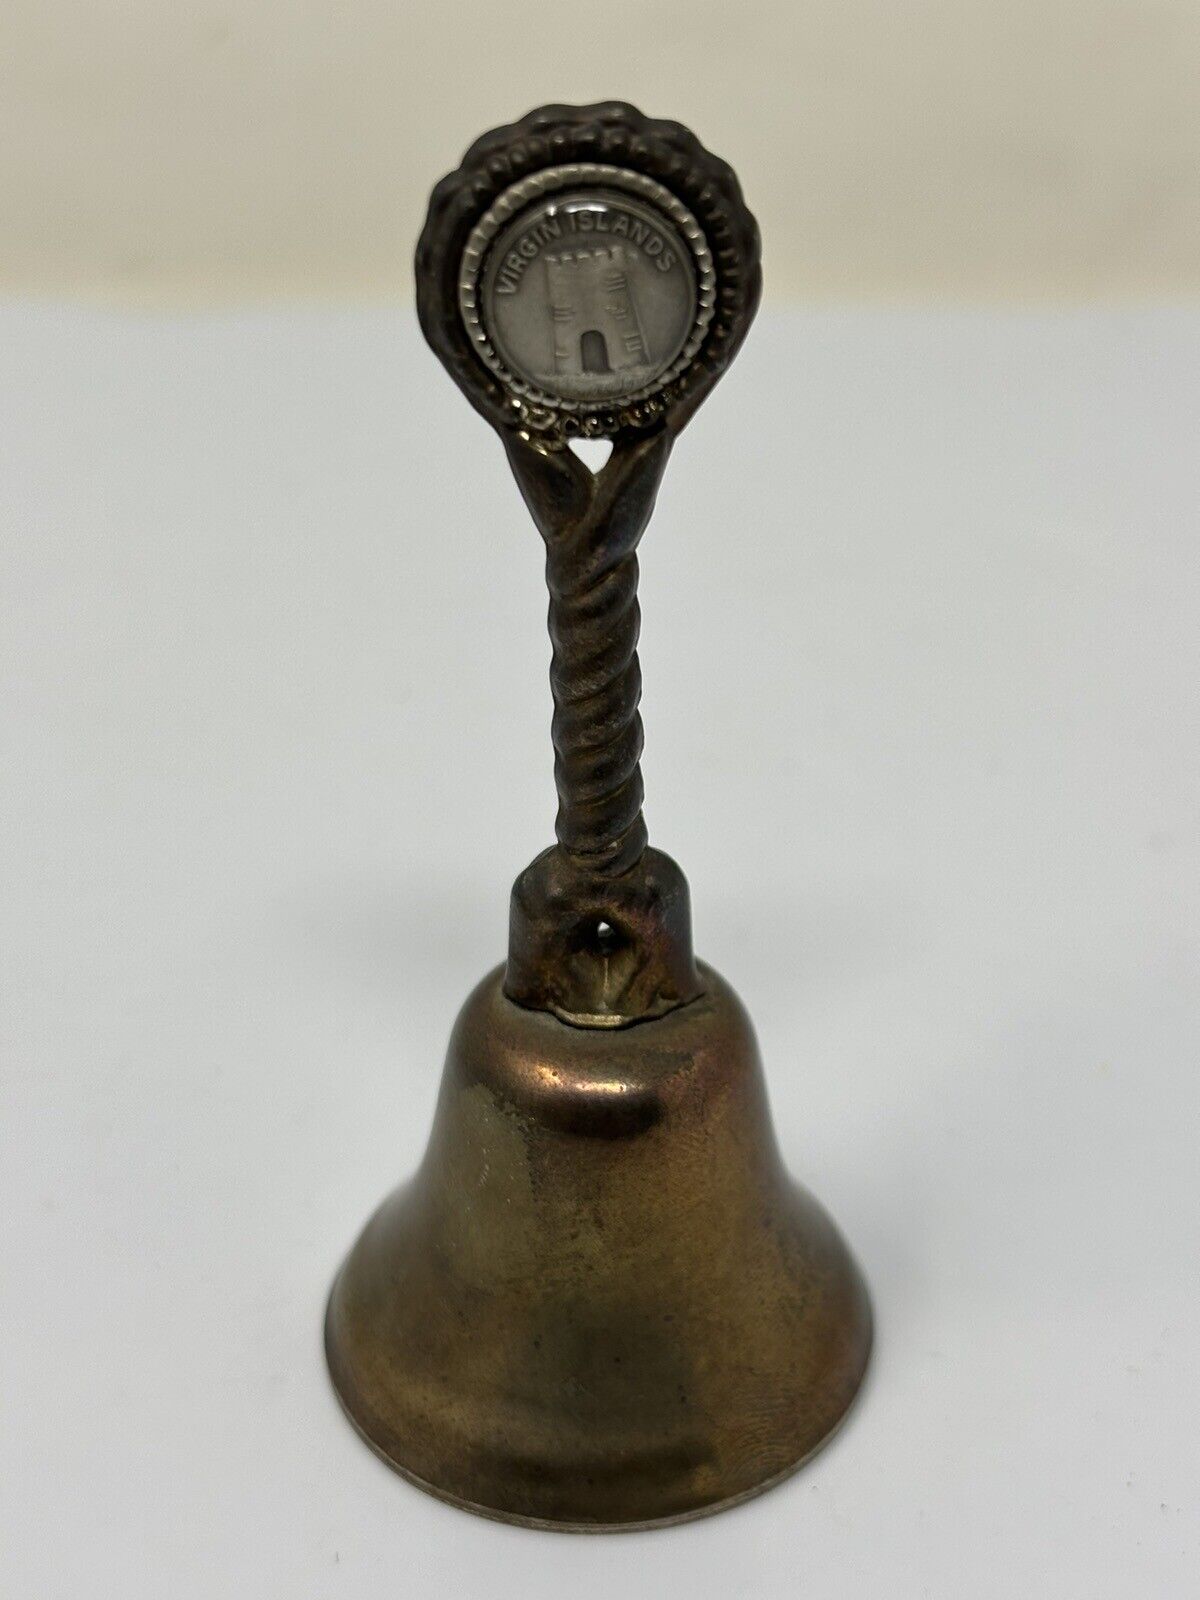 Vintage Brass Bell 3.5” Virgin Islands Vintage